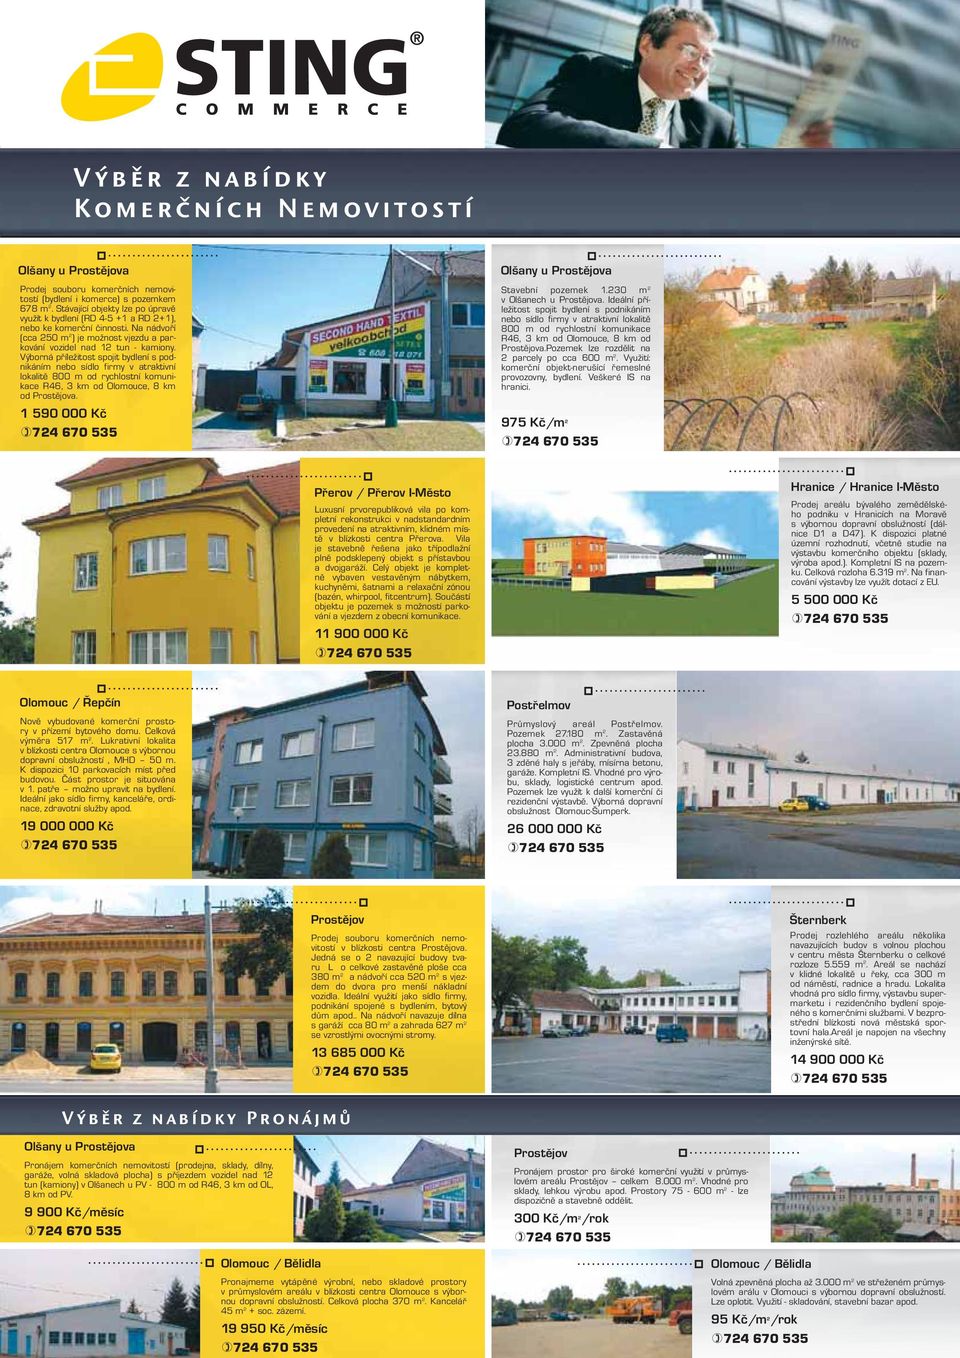 Výborná příležitost spojit bydlení s podnikáním nebo sídlo firmy v atraktivní lokalitě 800 m od rychlostní komunikace R46, 3 km od Olomouce, 8 km od a. 1 590 000 Kč Olšany u a Stavební pozemek 1.